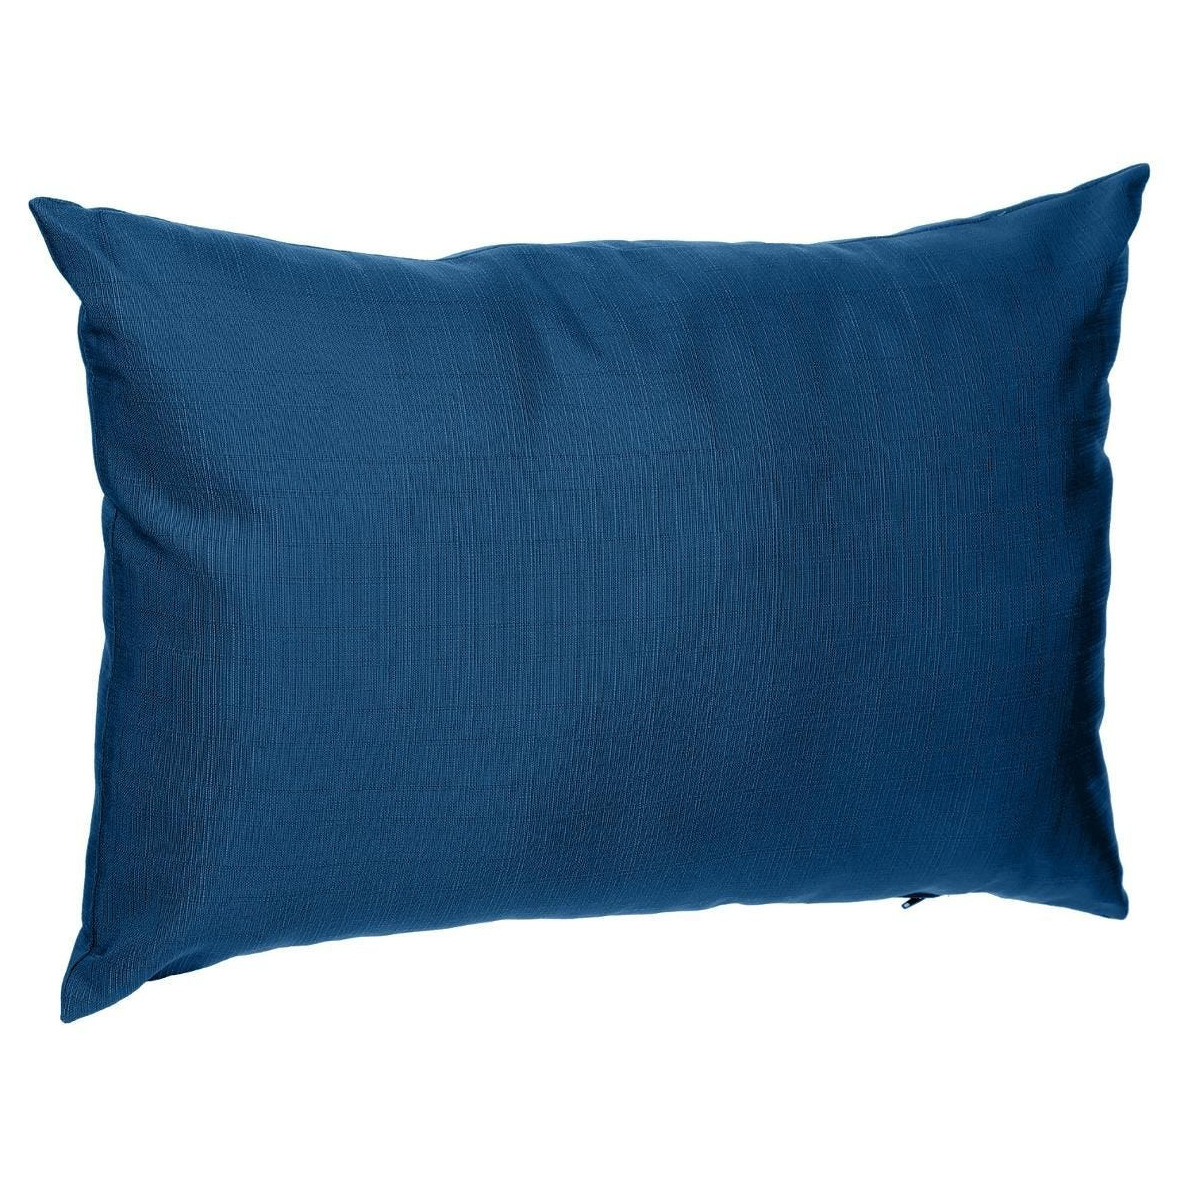 Bank-sier-tuin kussens voor binnen en buiten in de kleur indigo blauw 30 x 50 x 10 cm